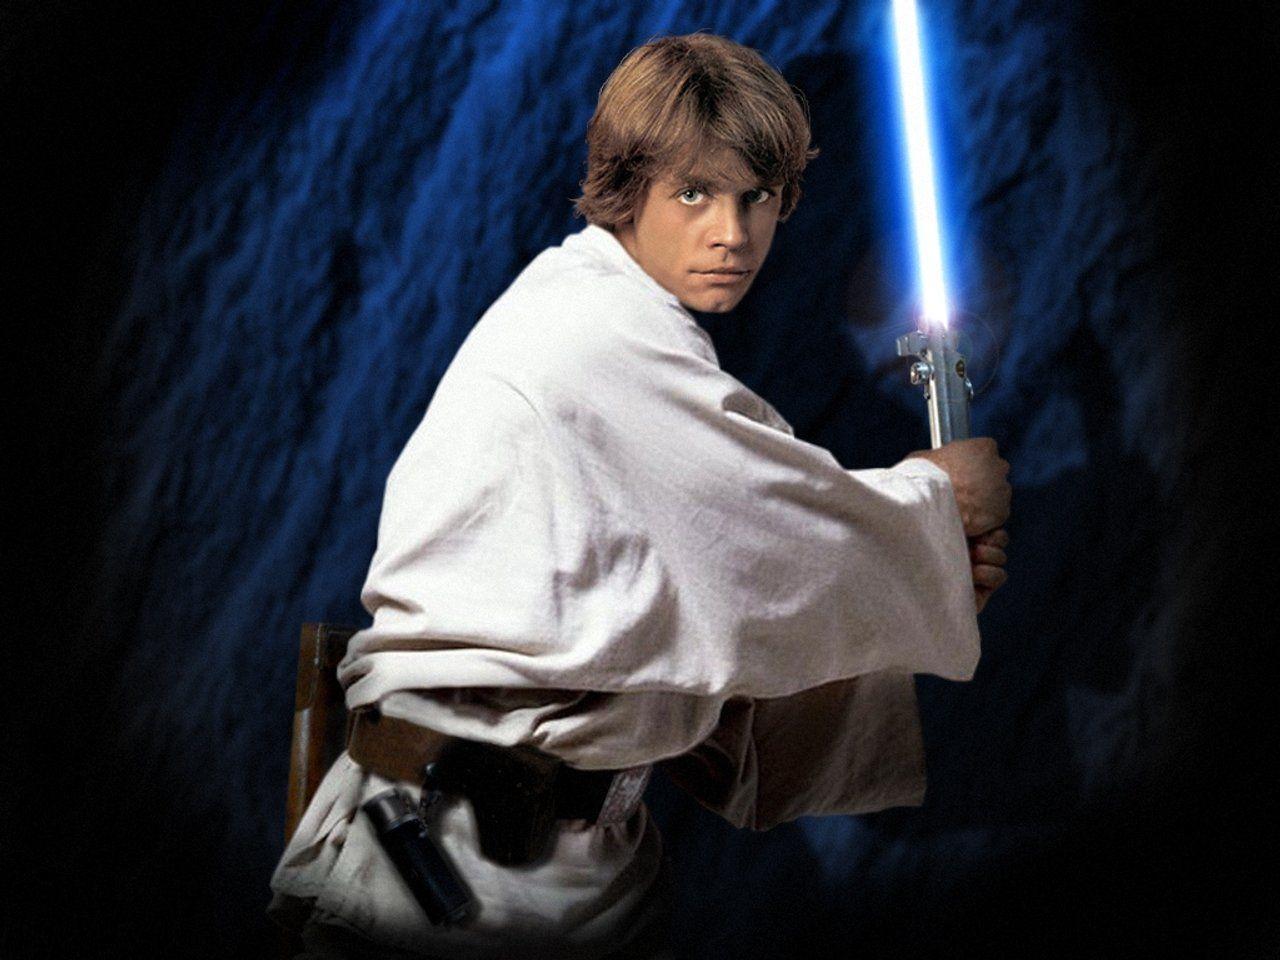 Star Wars Luke Skywalker Wallpaper. Films Wallpaper Gallery. PC